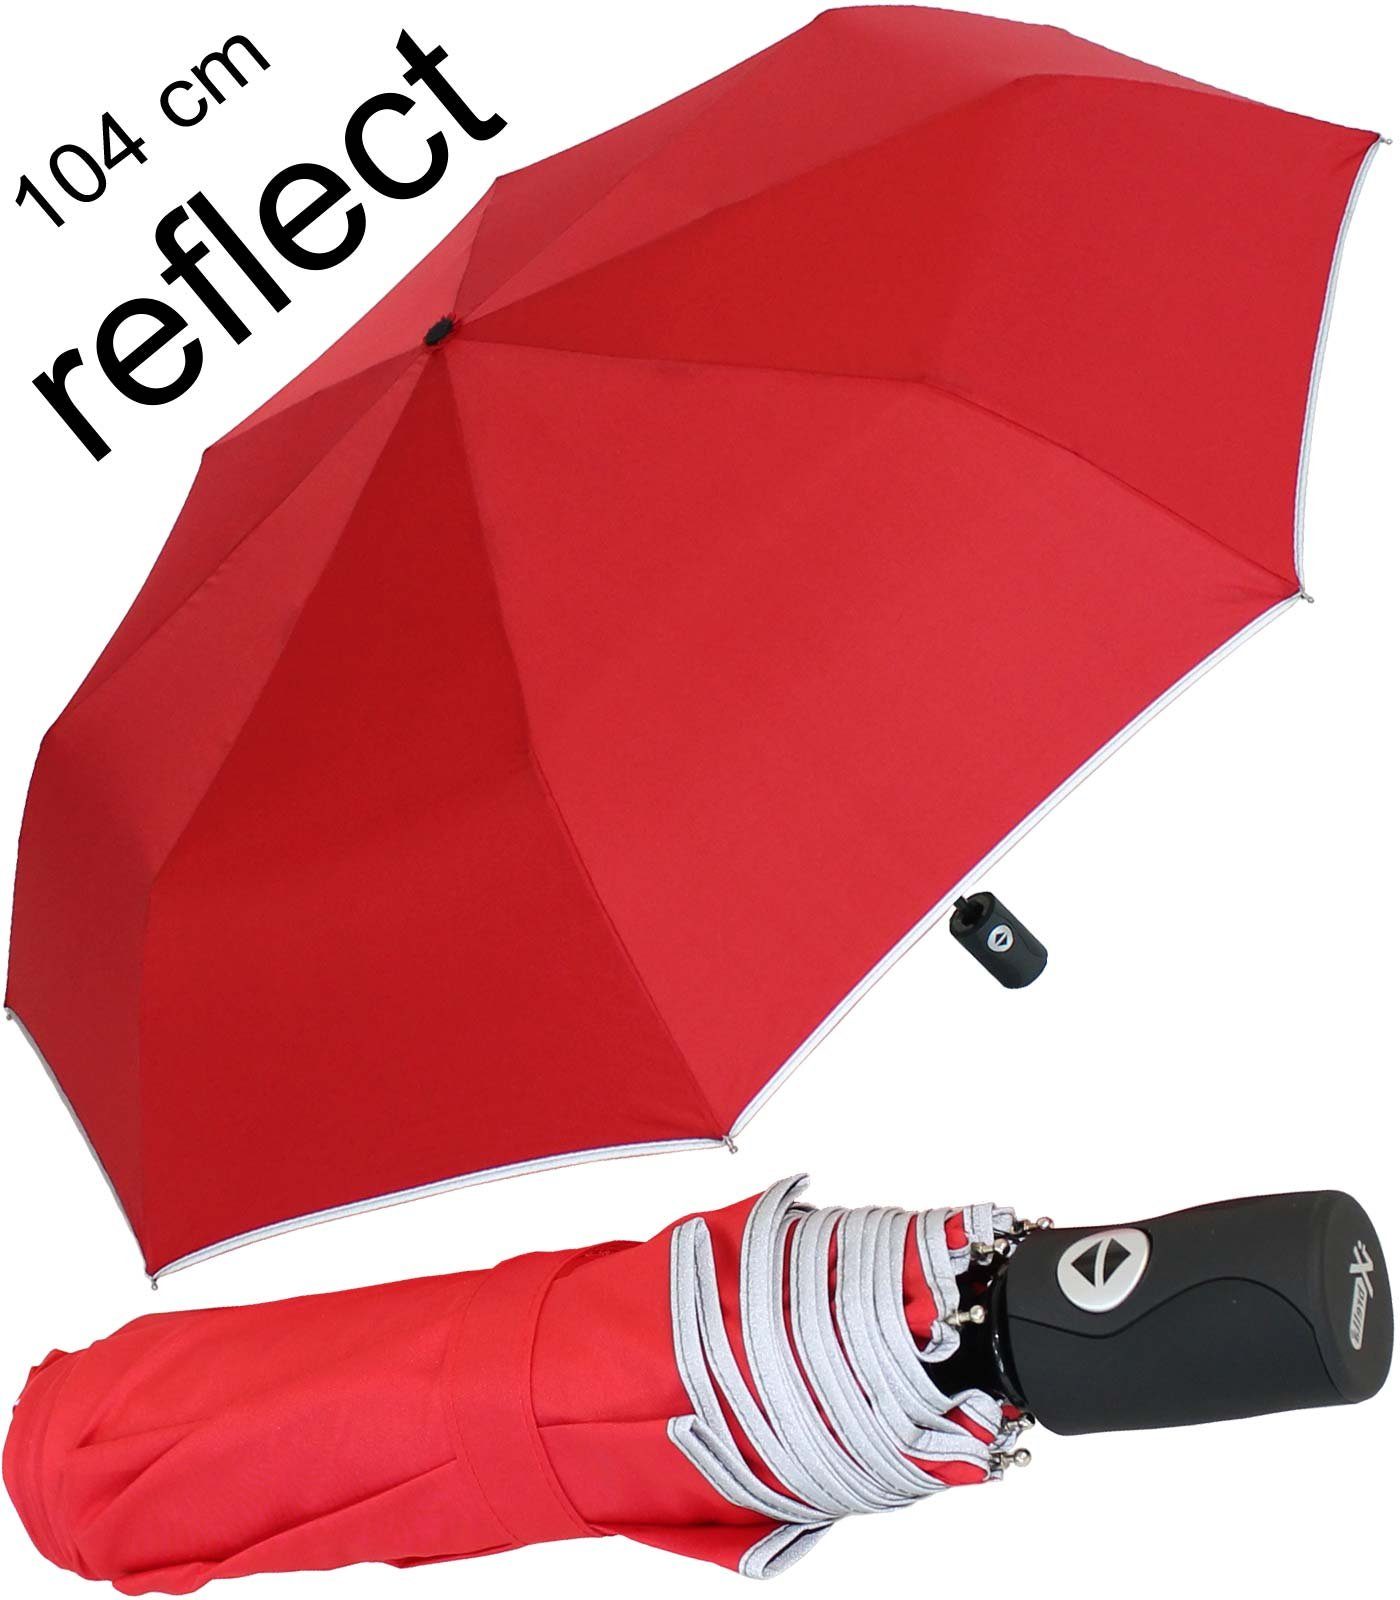 Damen Regenschirme iX-brella Taschenregenschirm reflect XL Sicherheitsschirm Auf-Zu-Automatik, 104cm groß, mit reflektierender B